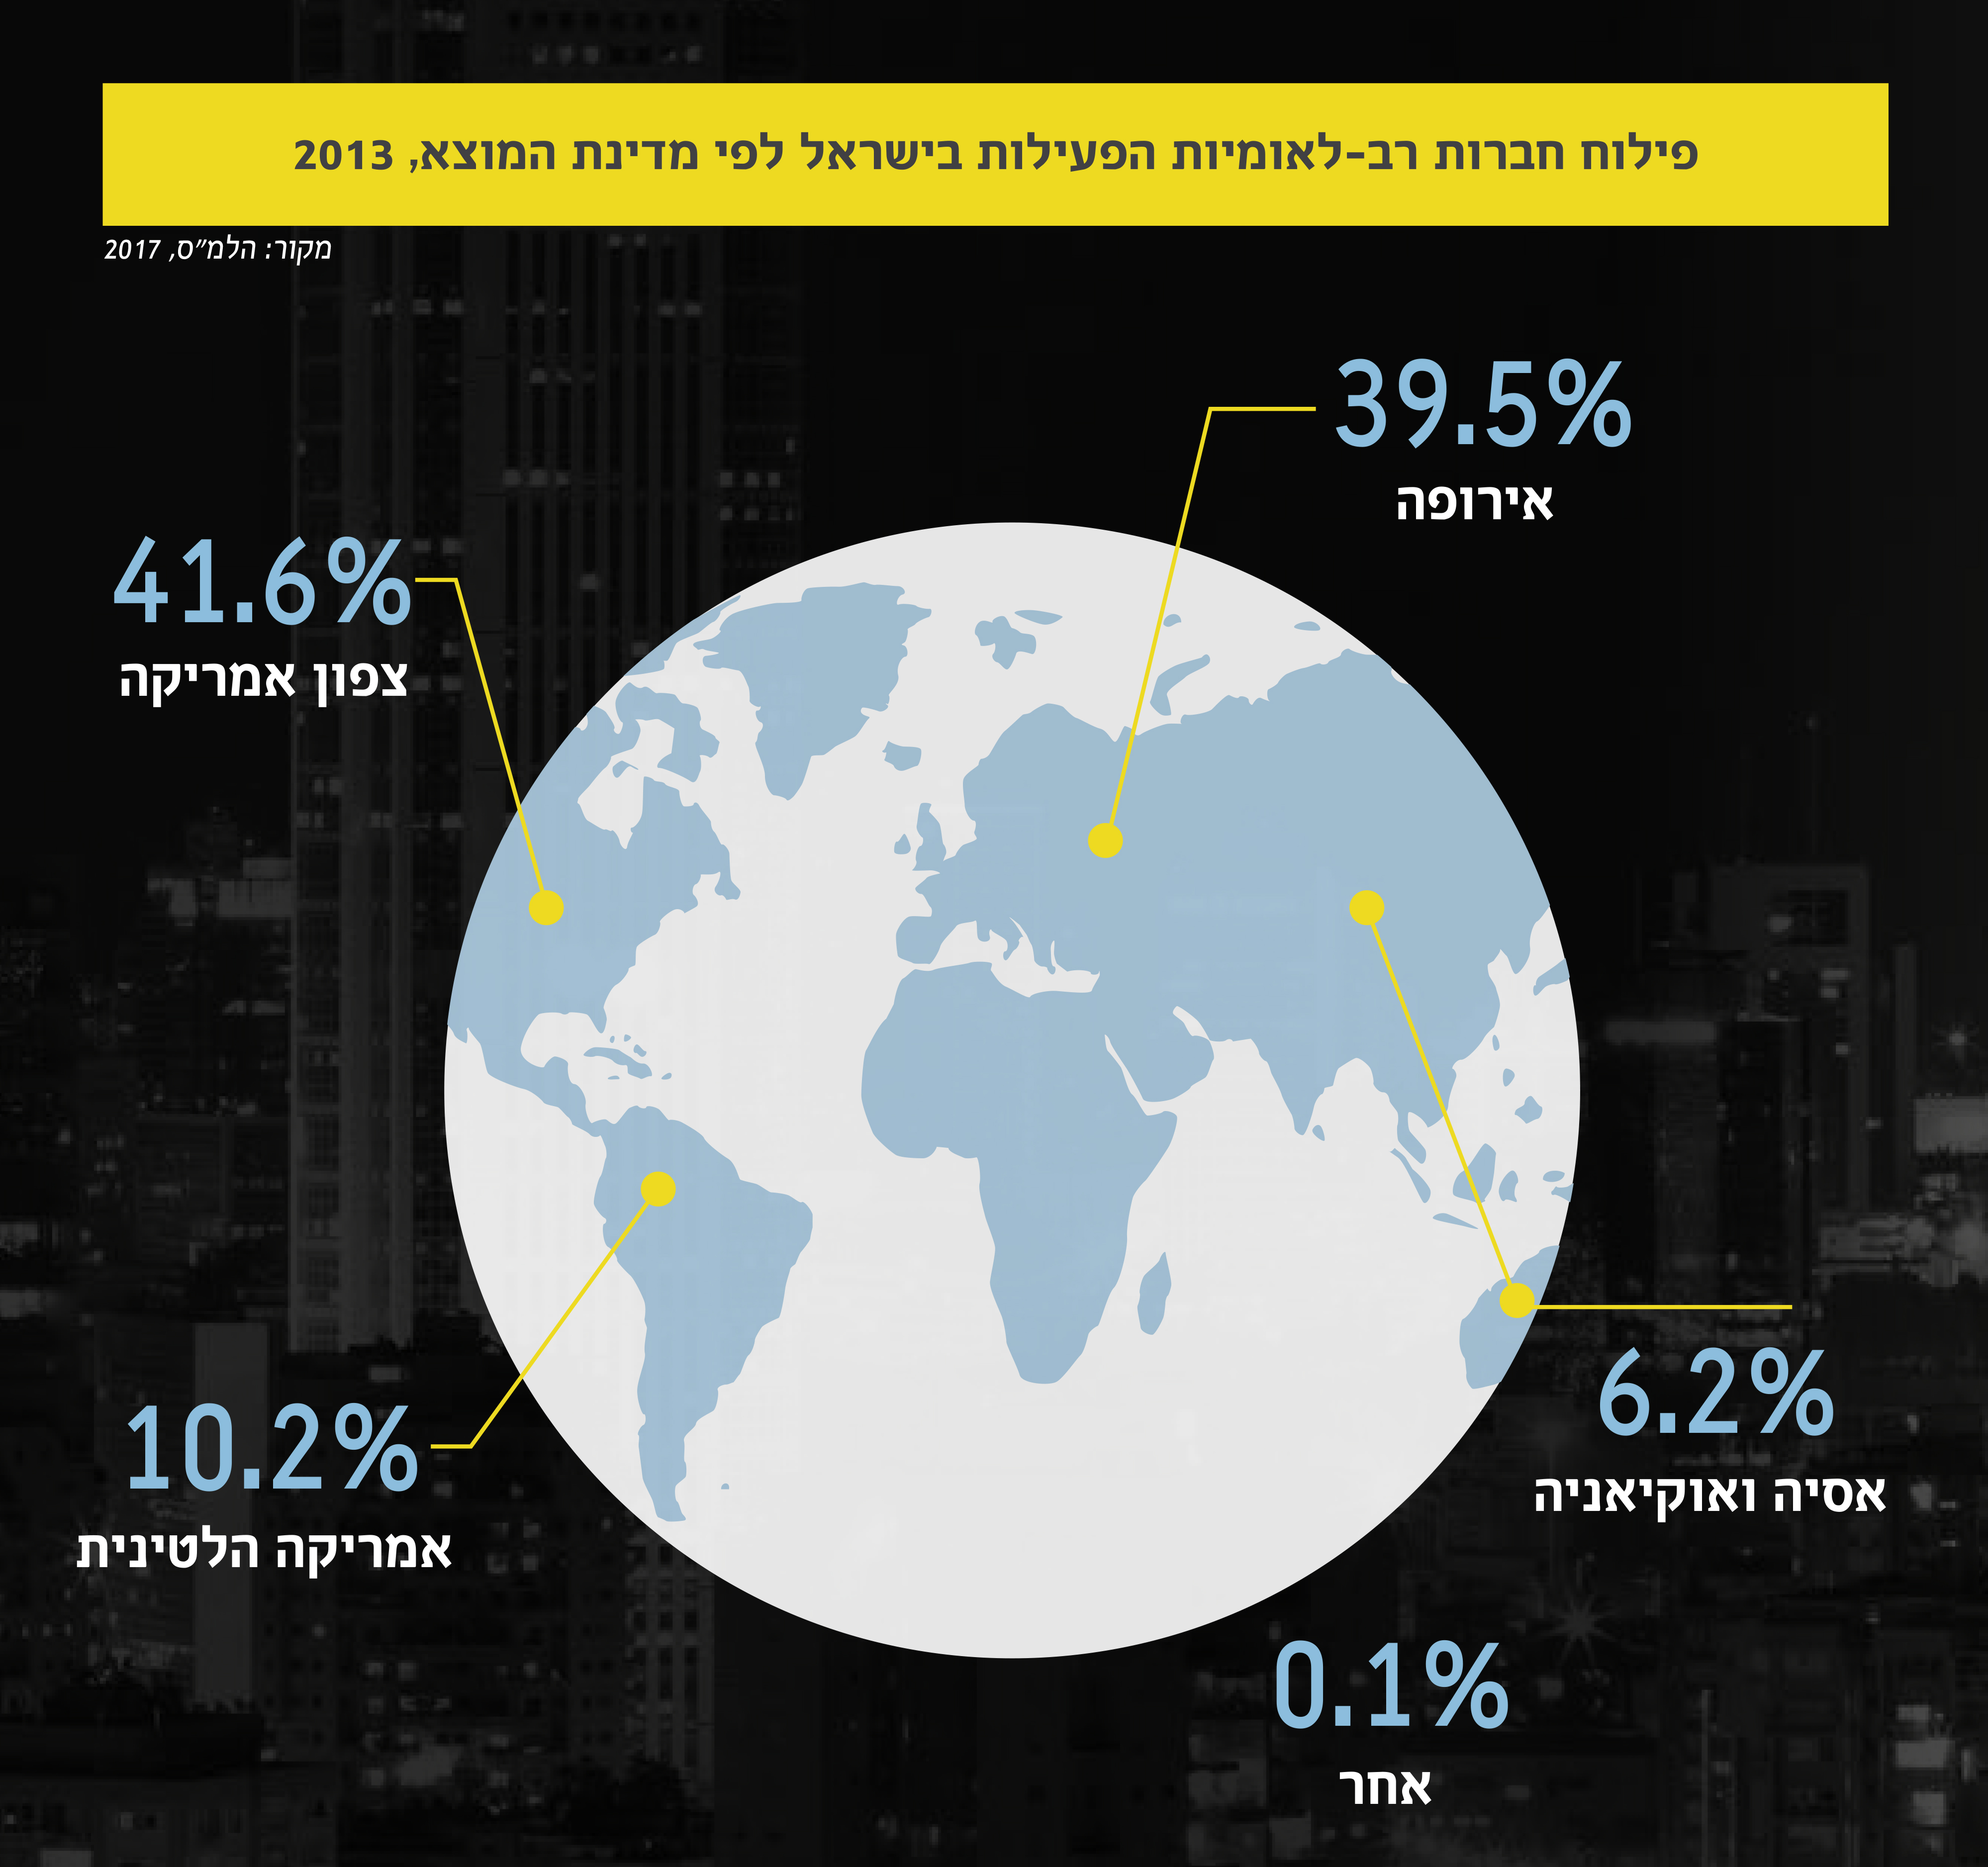 גרף: פילוח חברות רב-לאומיות הפעילות בישראל לפי מדינת המוצא, 2013